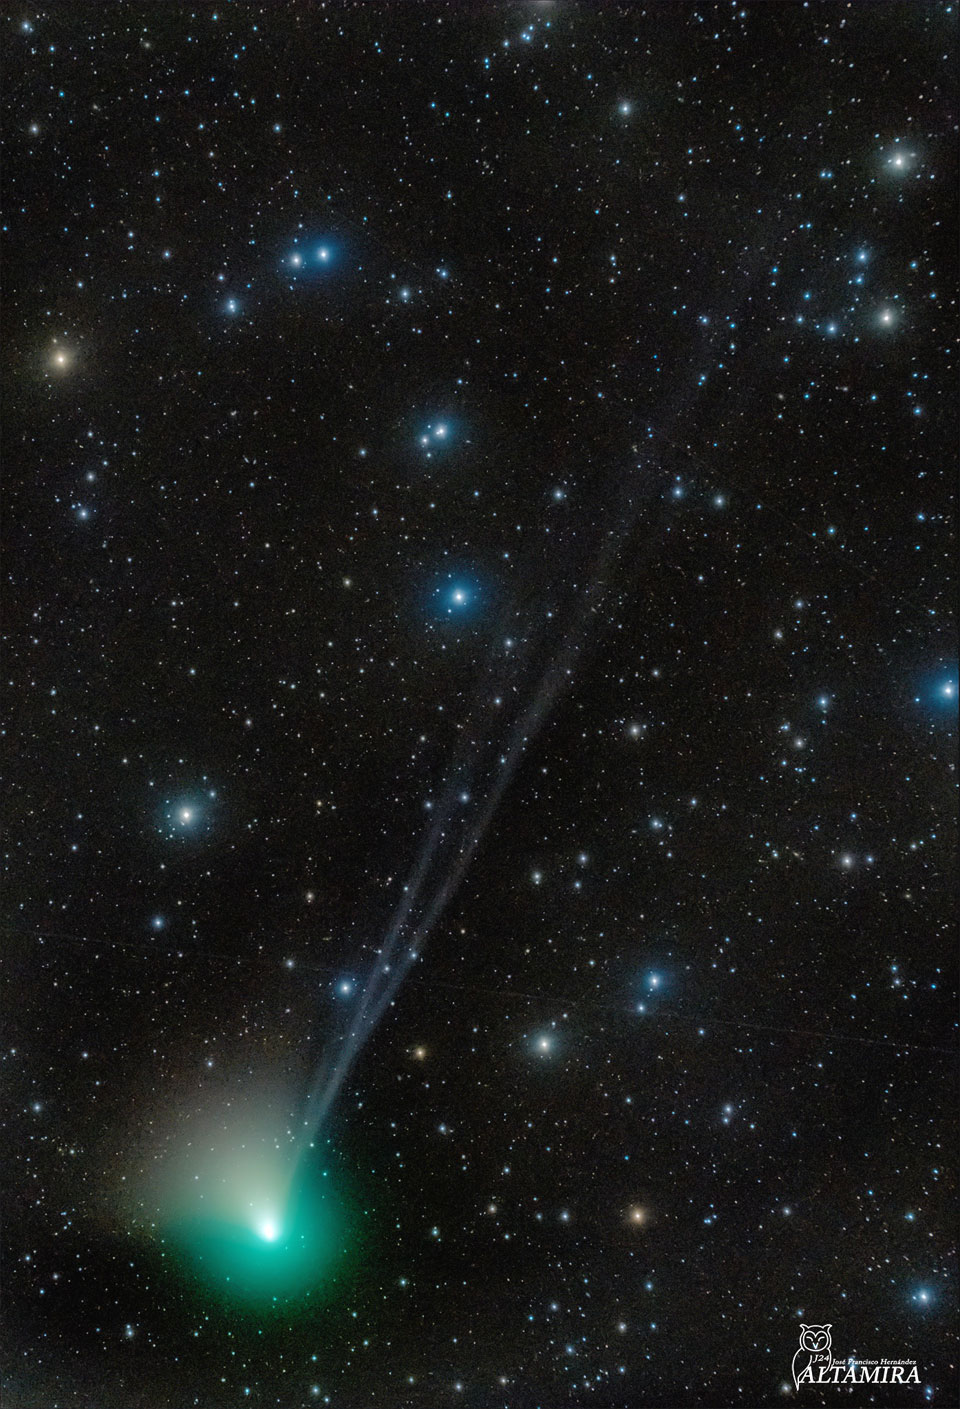 Na zdjęciu nowa kometa ZTF, rozwijająca trzy warkocze na tle gwiazd. Więcej szczegółowych informacji w opisie poniżej.